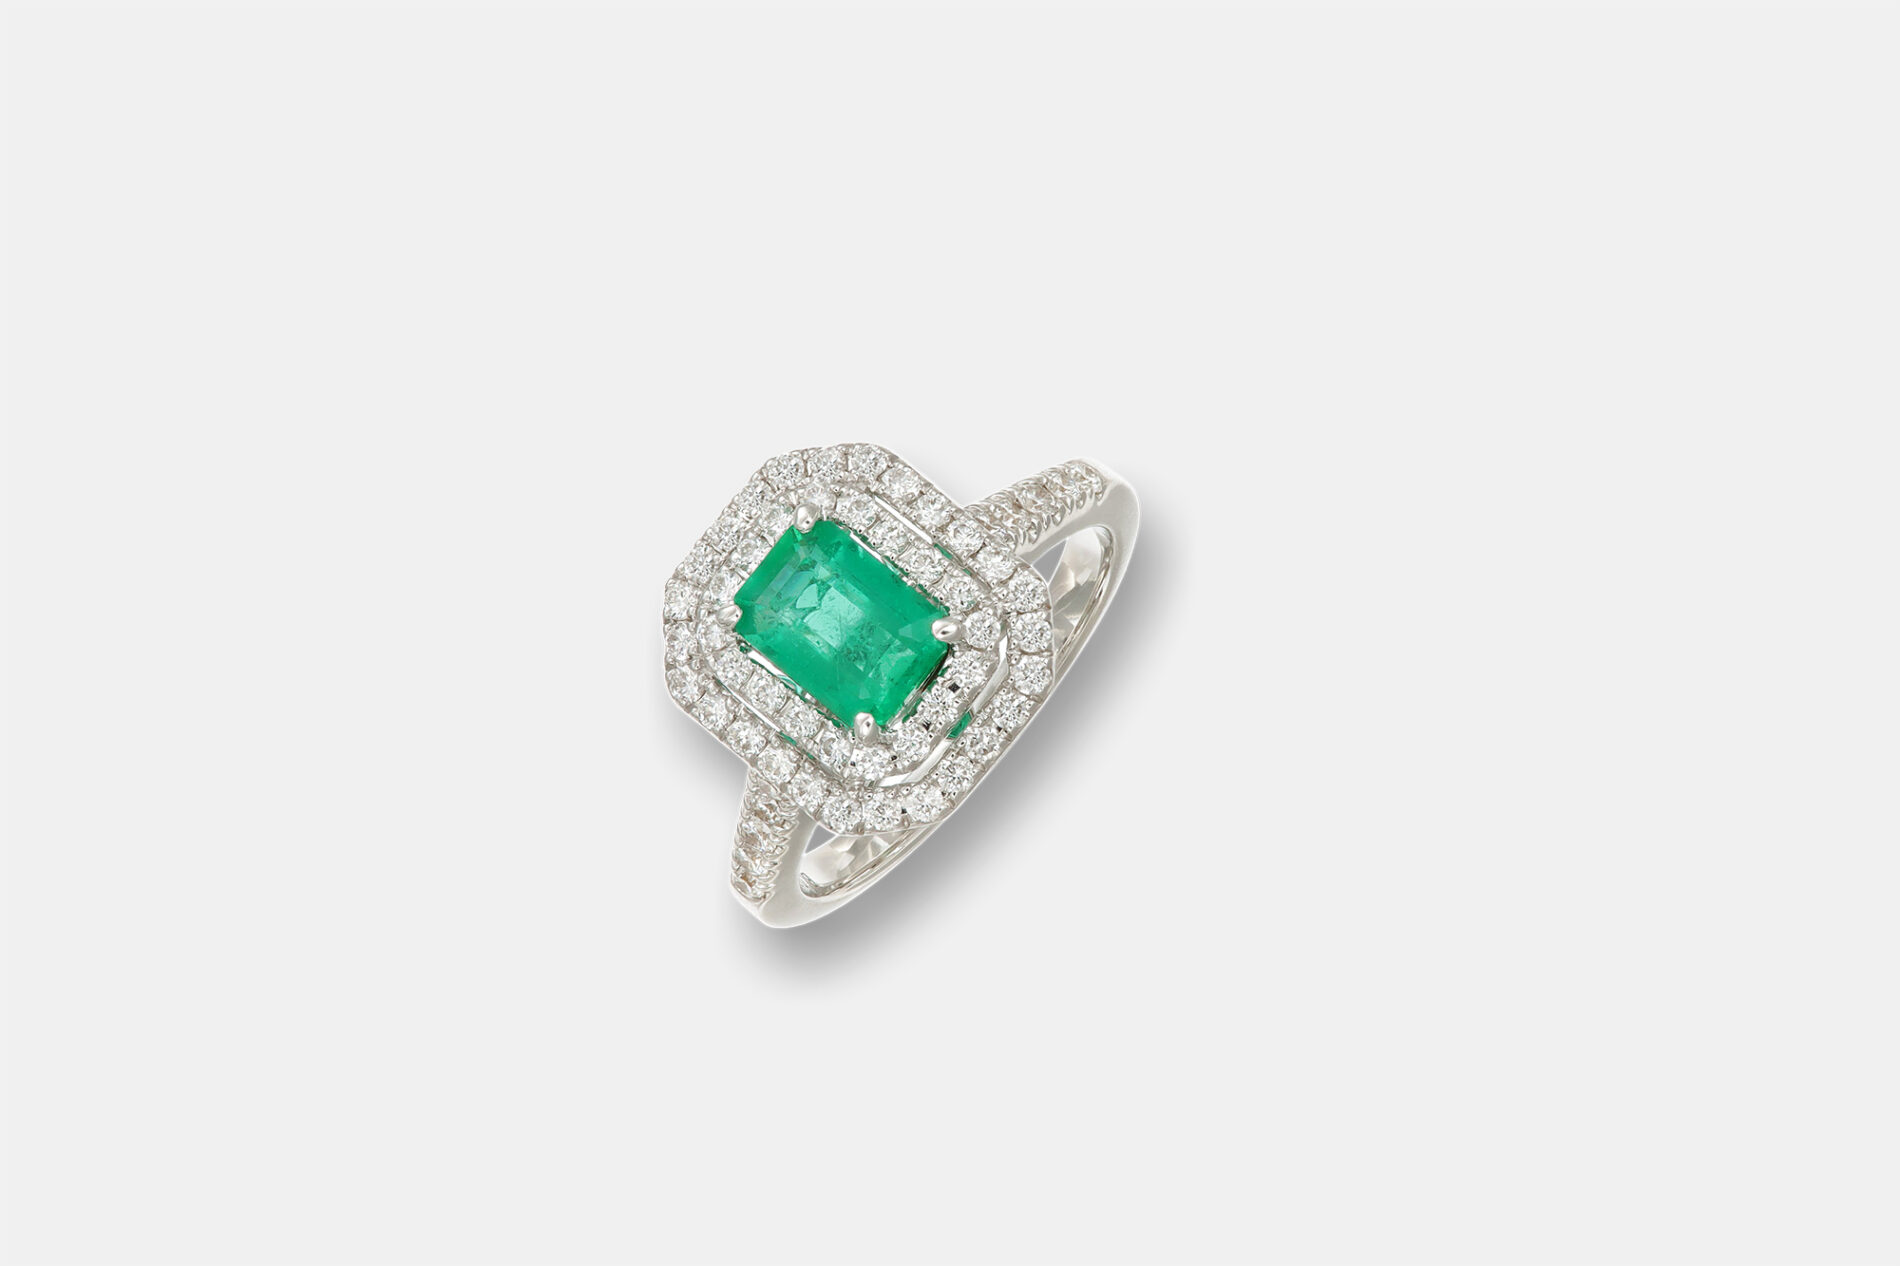 Crivelli anello smeraldo halo con diamanti - Gioielleria Casavola di Noci - idee regalo anniversario 20 anni matrimonio - per lei